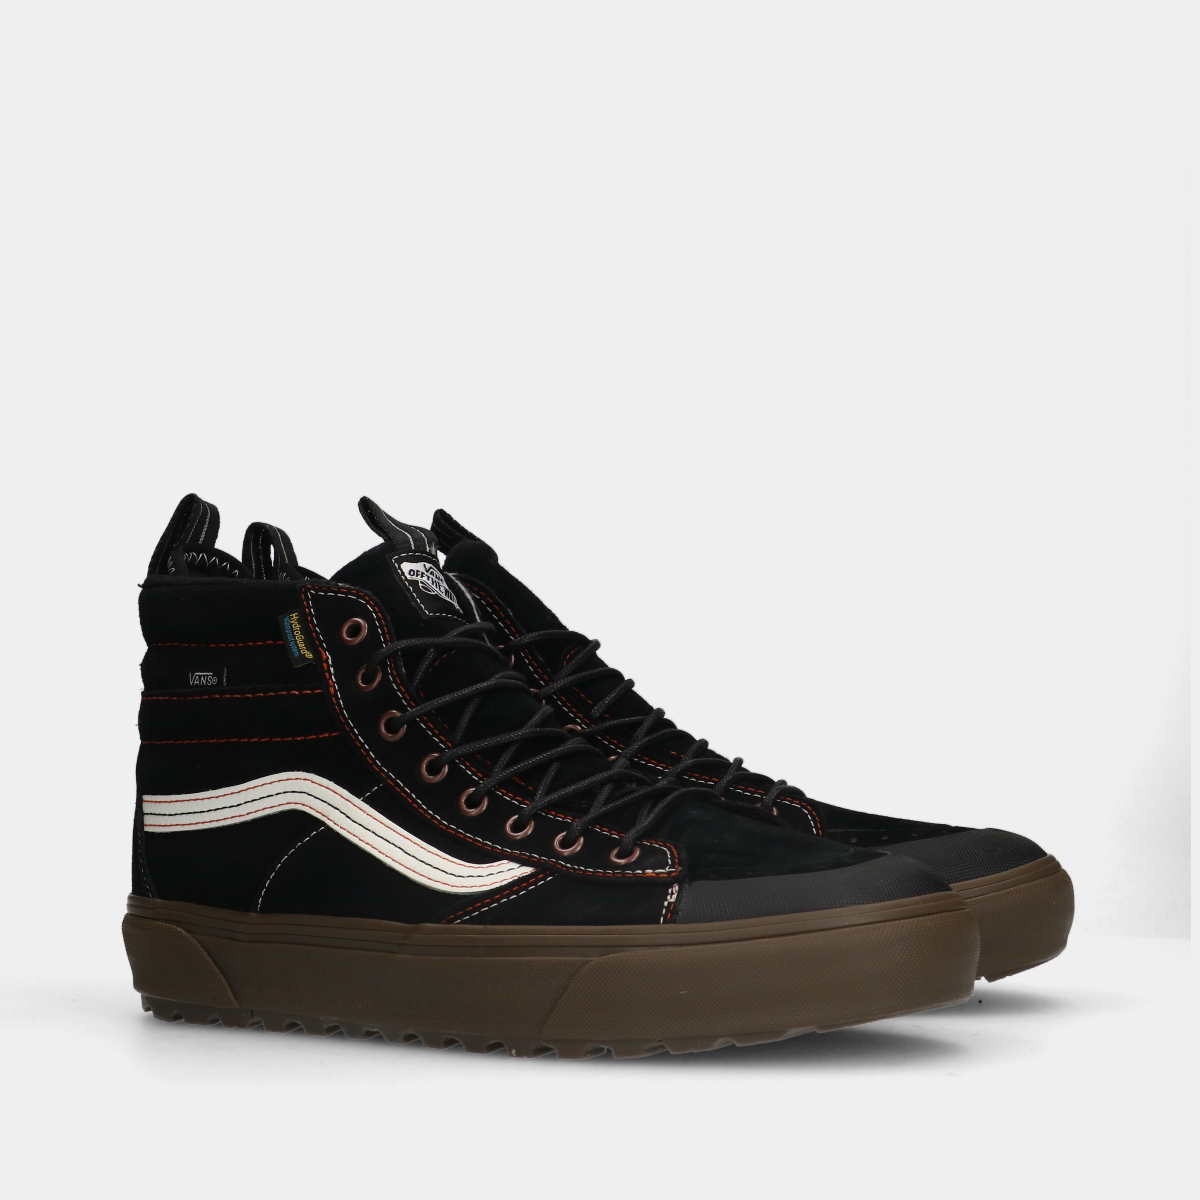 Vans SK8-Hi Mte-2 black sneakers